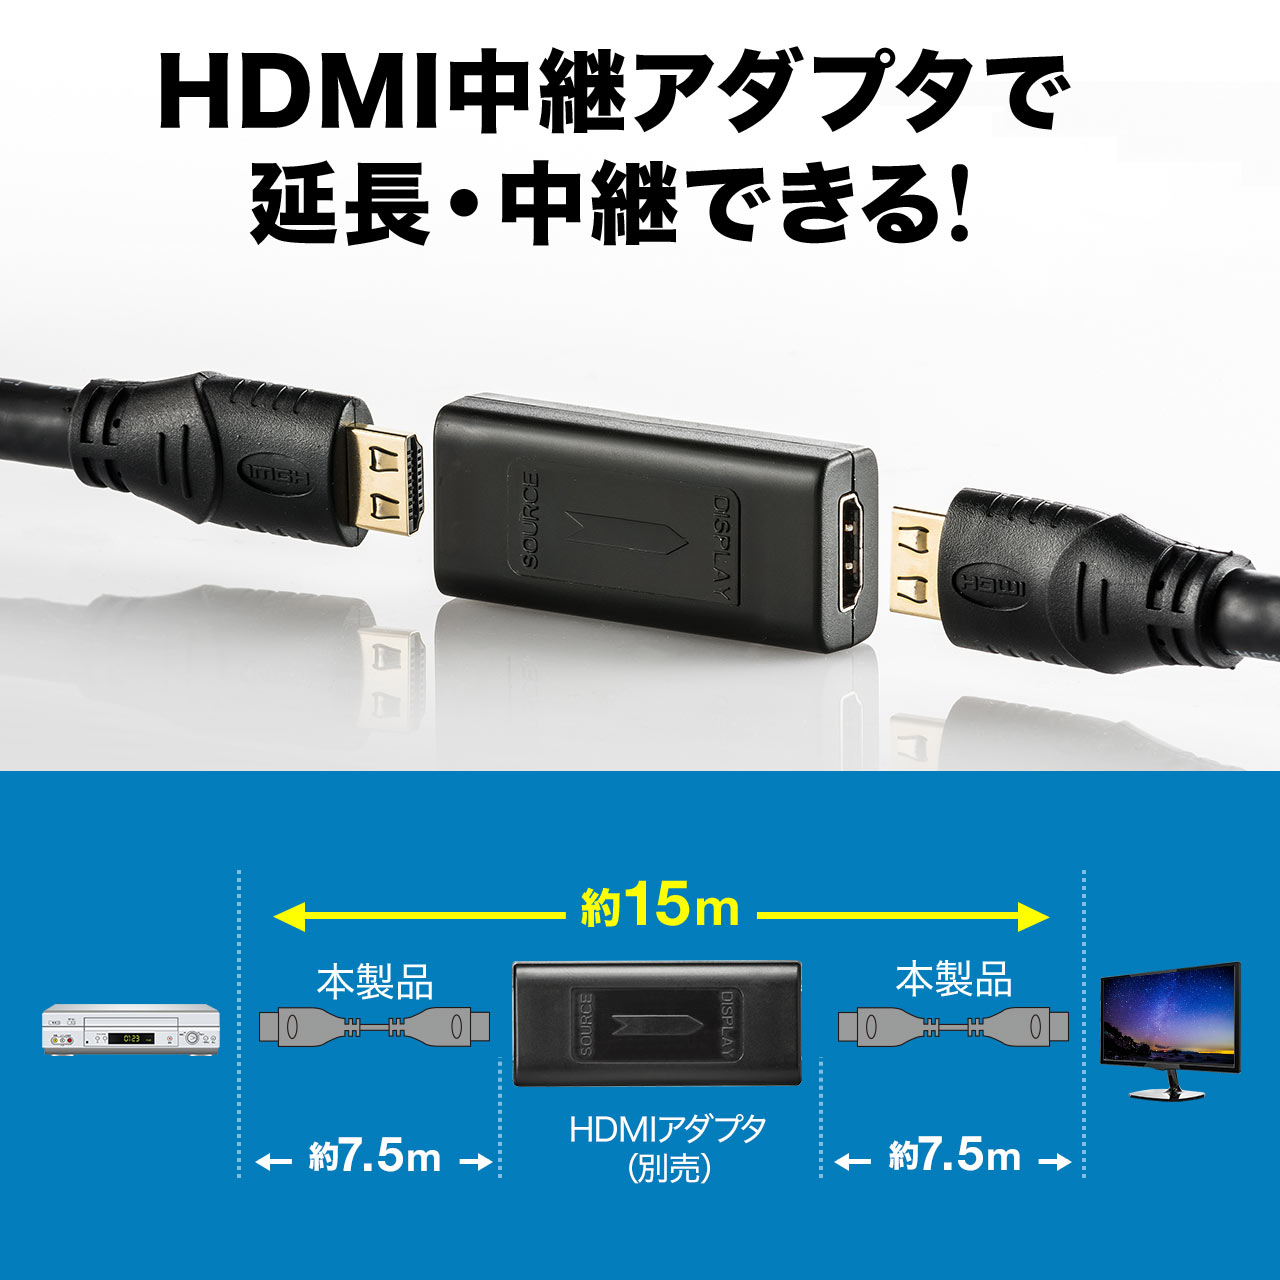 ~HDMIP[ui7.5mE4K/60HzE3DΉEb`EubNj 500-HDMI018-75